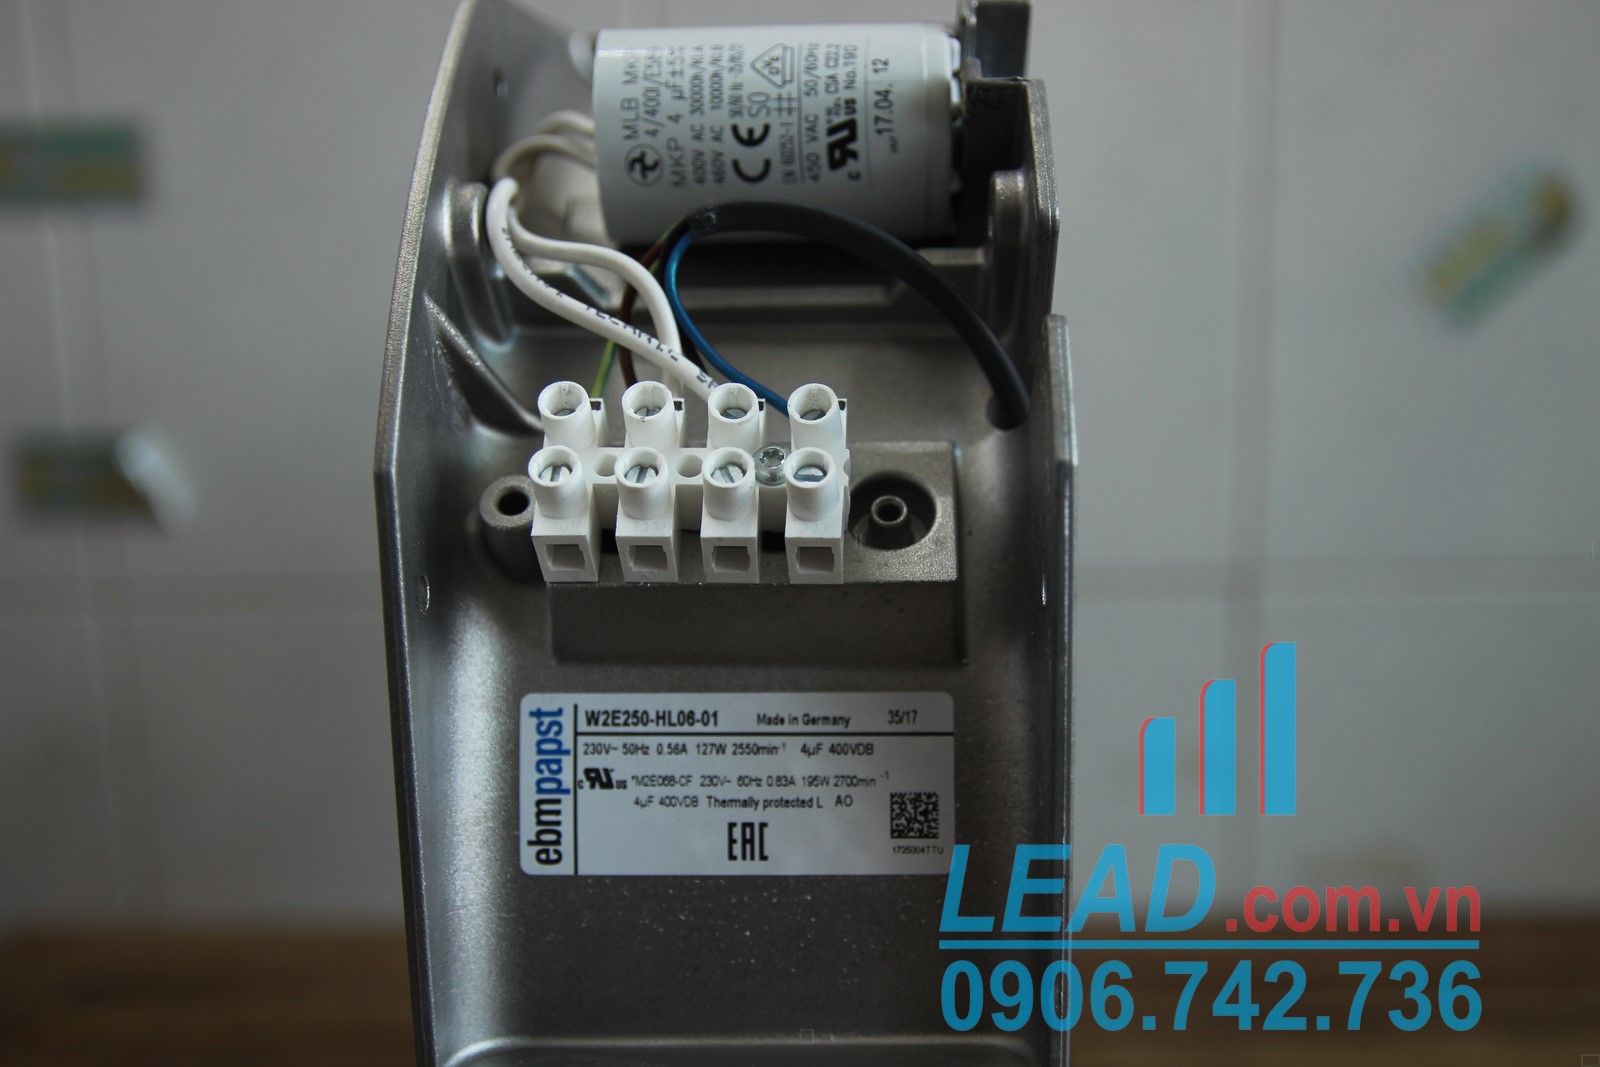 Quạt hút EBMPAST W2E250-HL06-01, 230VAC, 280x280x80mm